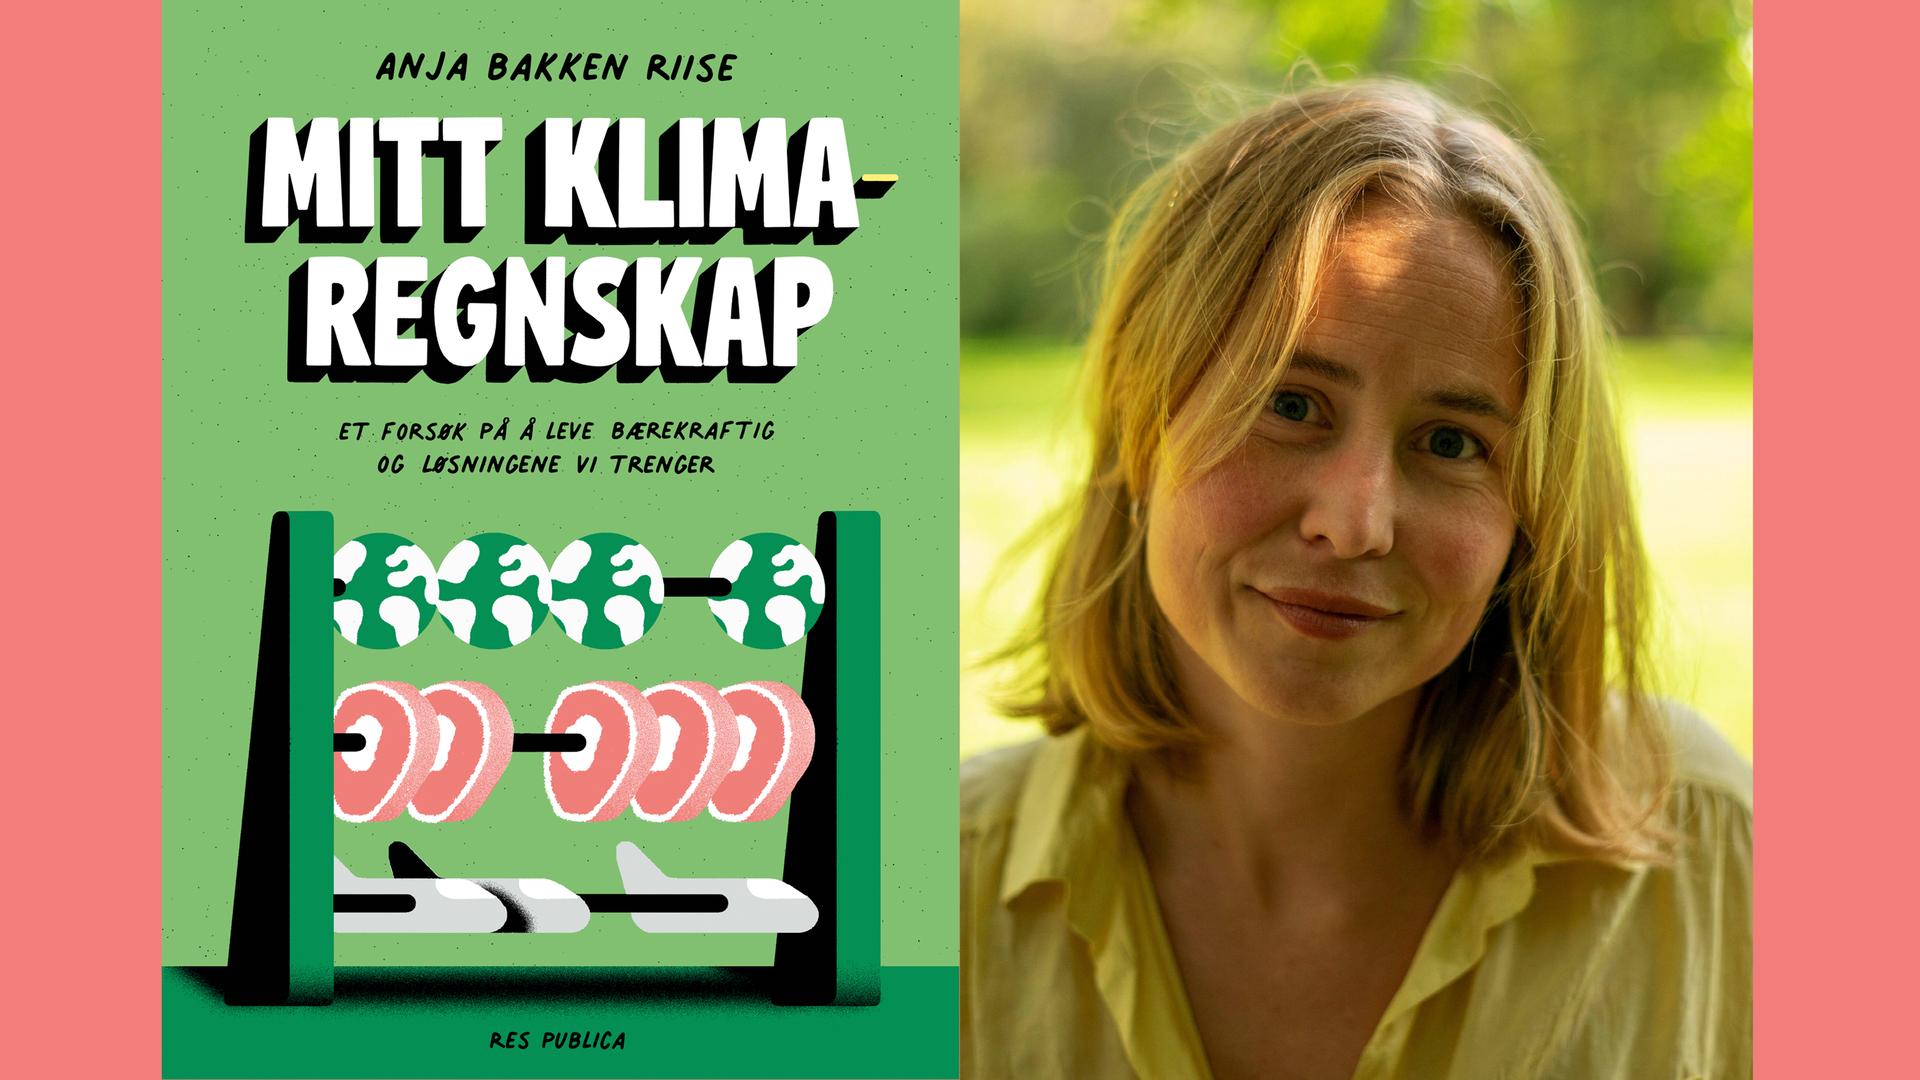 Portrett av Anja Bakken Riise og bokomslag av "Mitt klima regnskap".